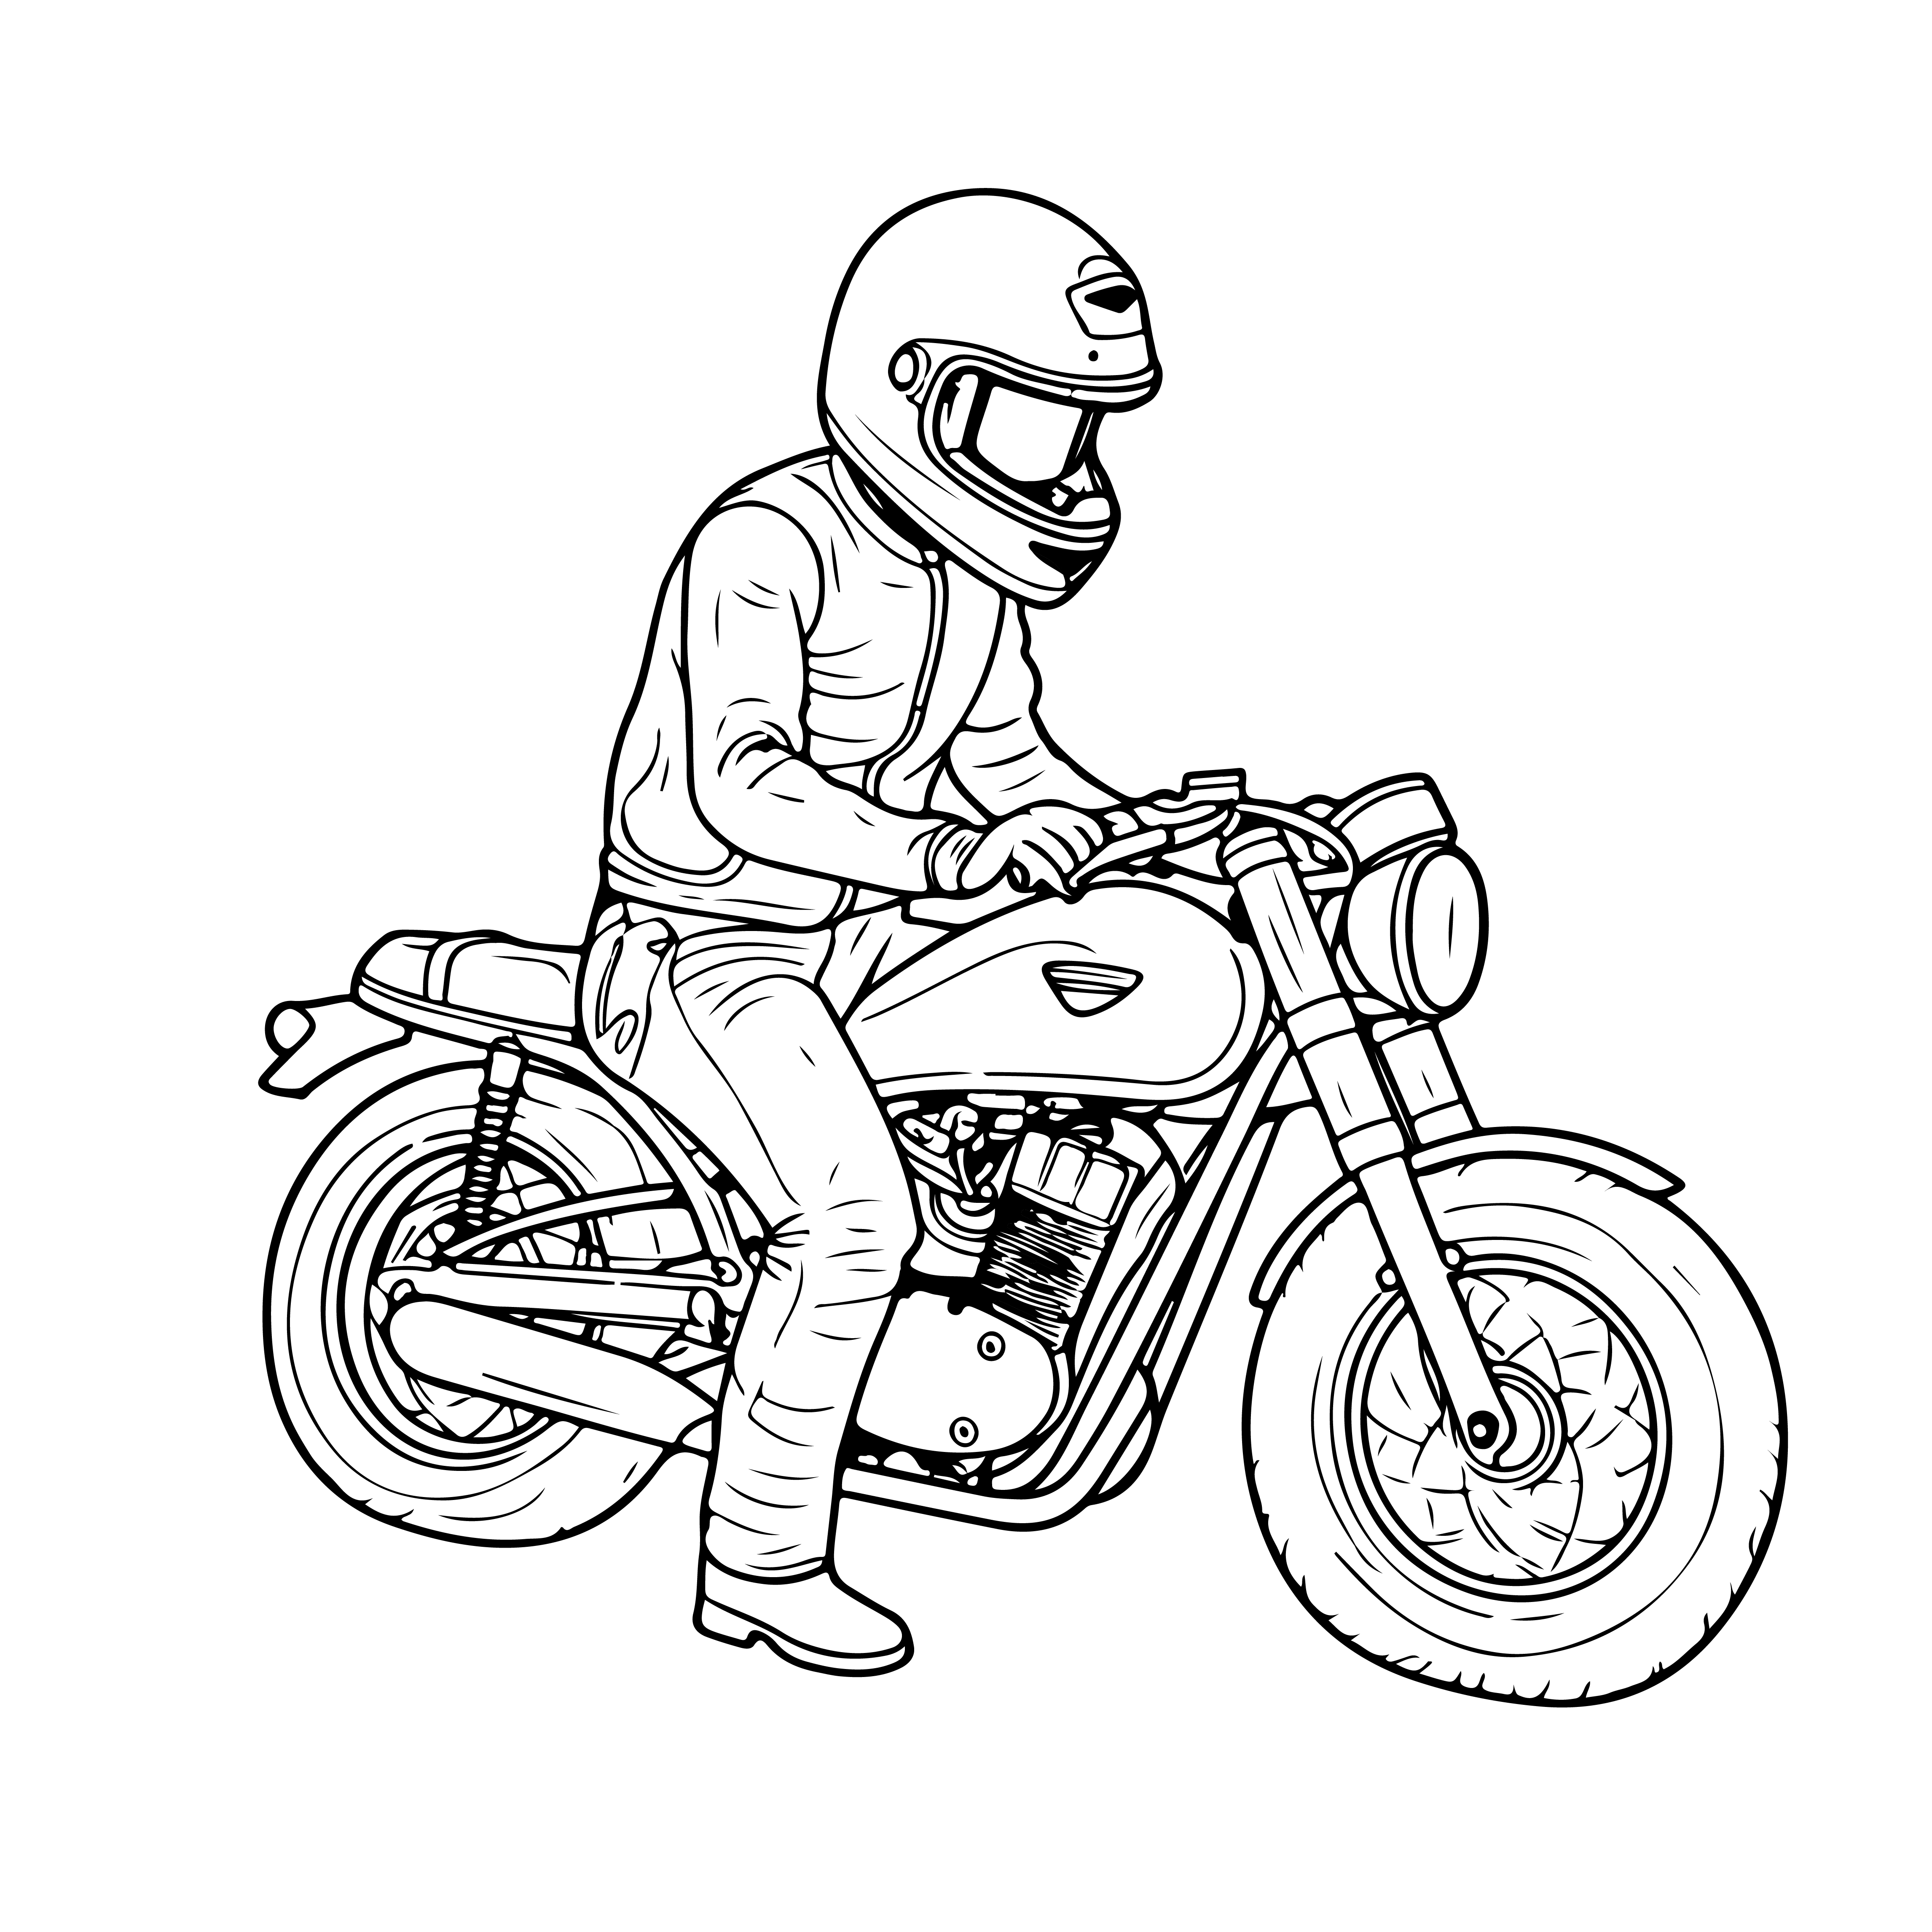 Раскраска мотоциклист в шлеме на железном коне формата А4 в высоком качестве